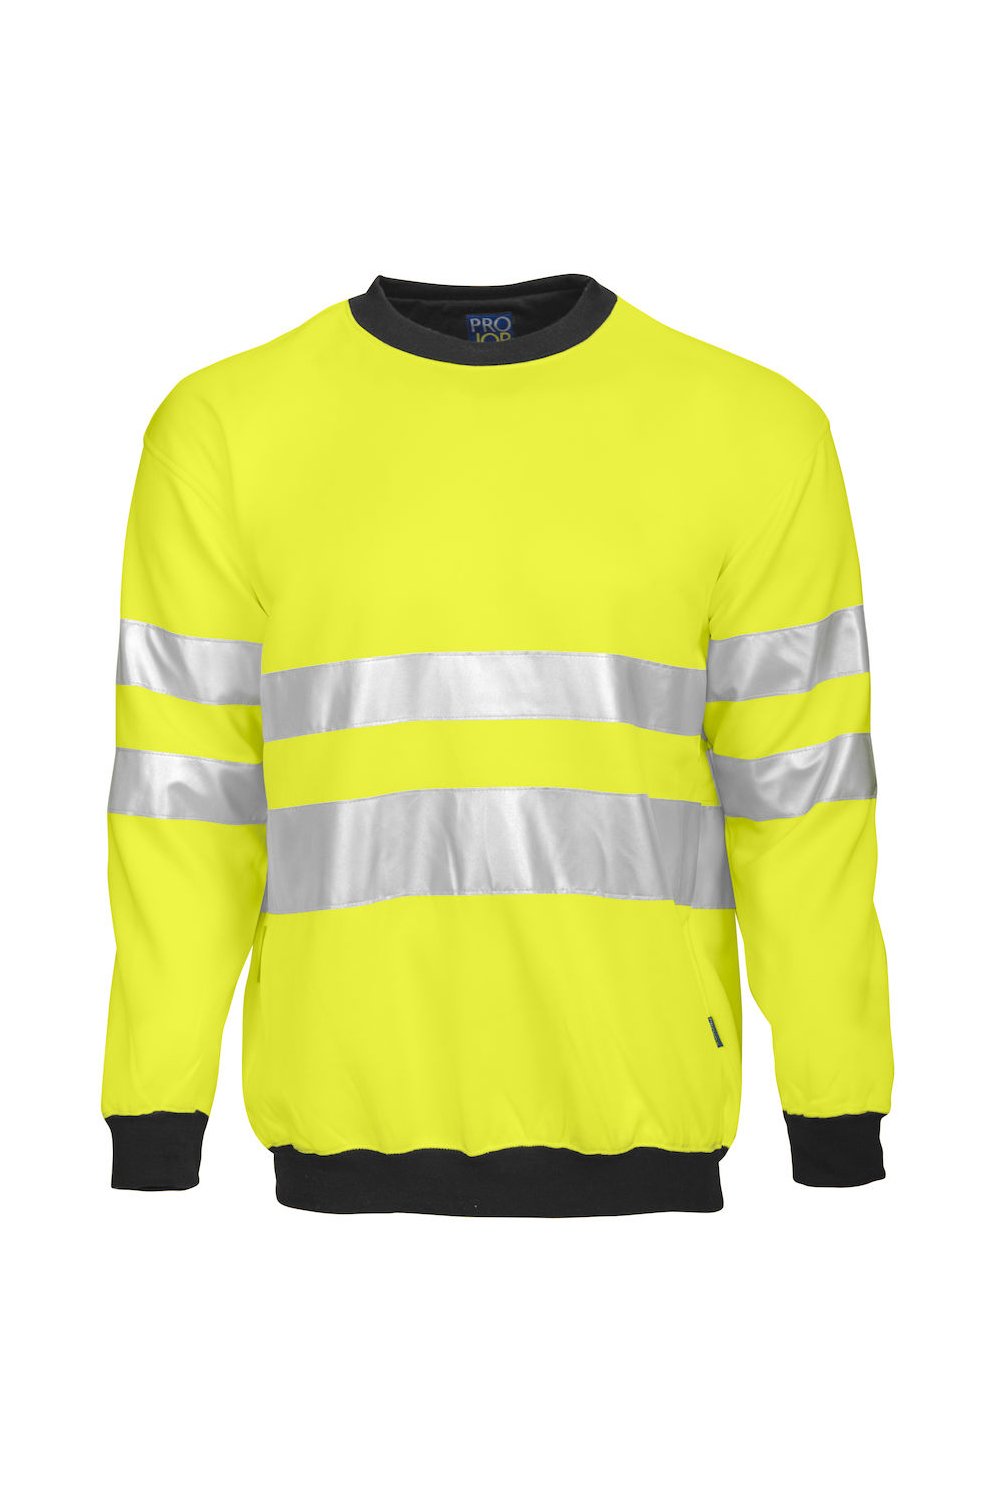 Sweatshirt EN ISO 20471 Klasse 3, gelb/schwarz